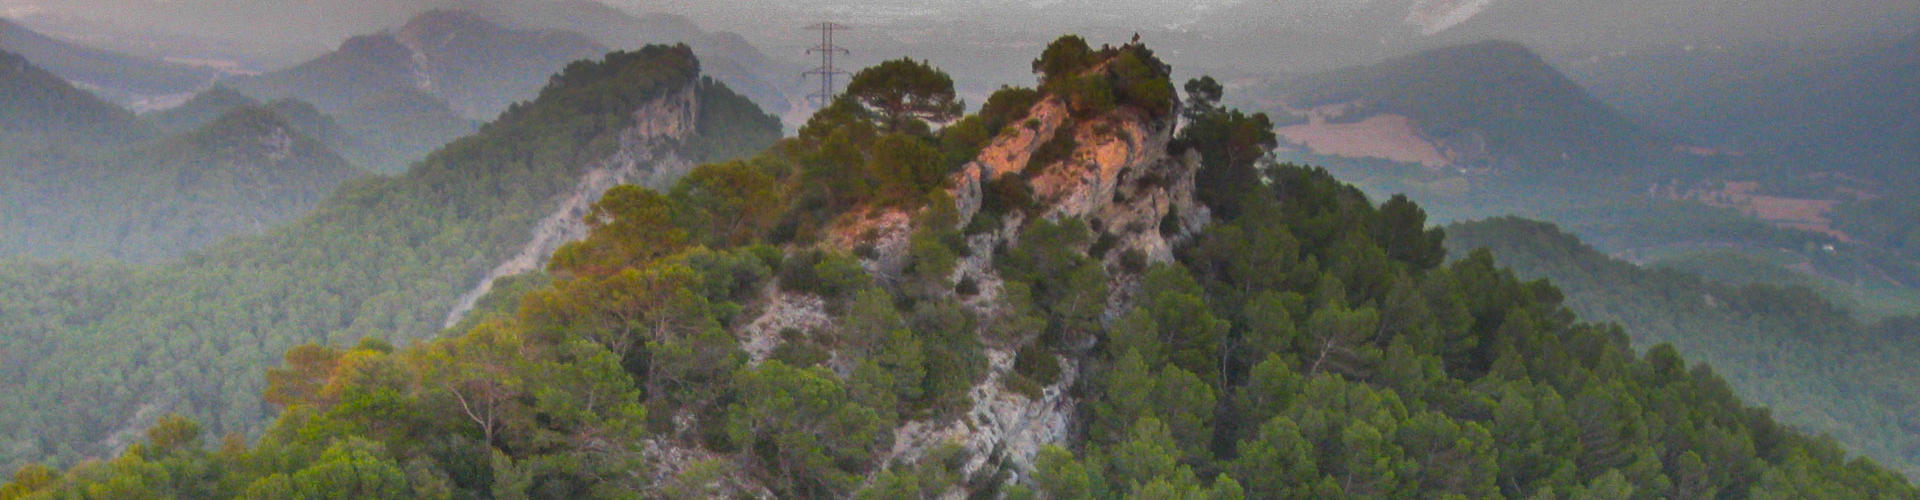 L'Agulla Grossa i la Serra de Miralles.